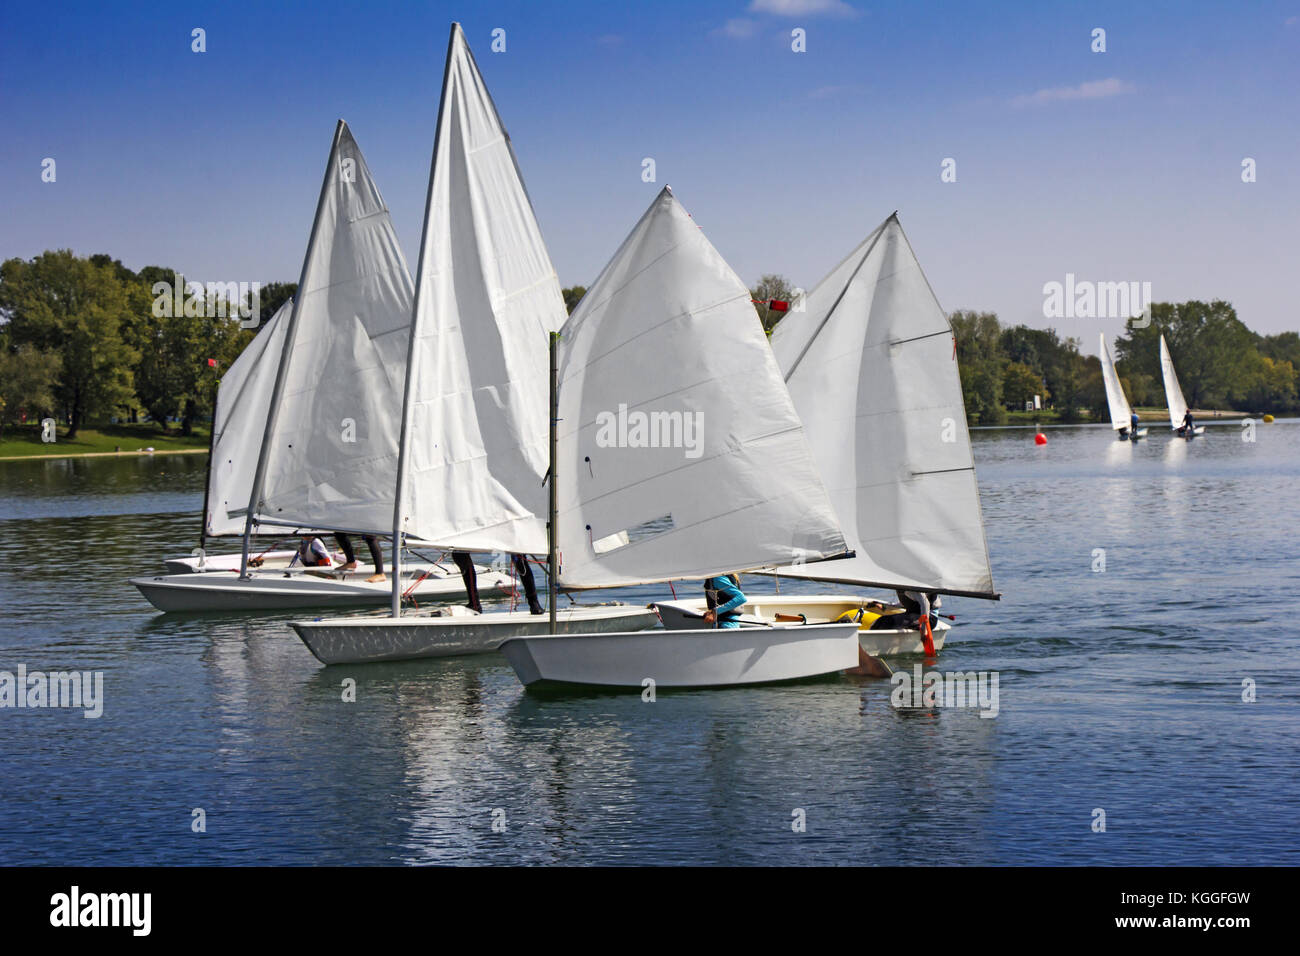 Voile sports dans beaucoup de petits bateaux sur le lac blanc Banque D'Images